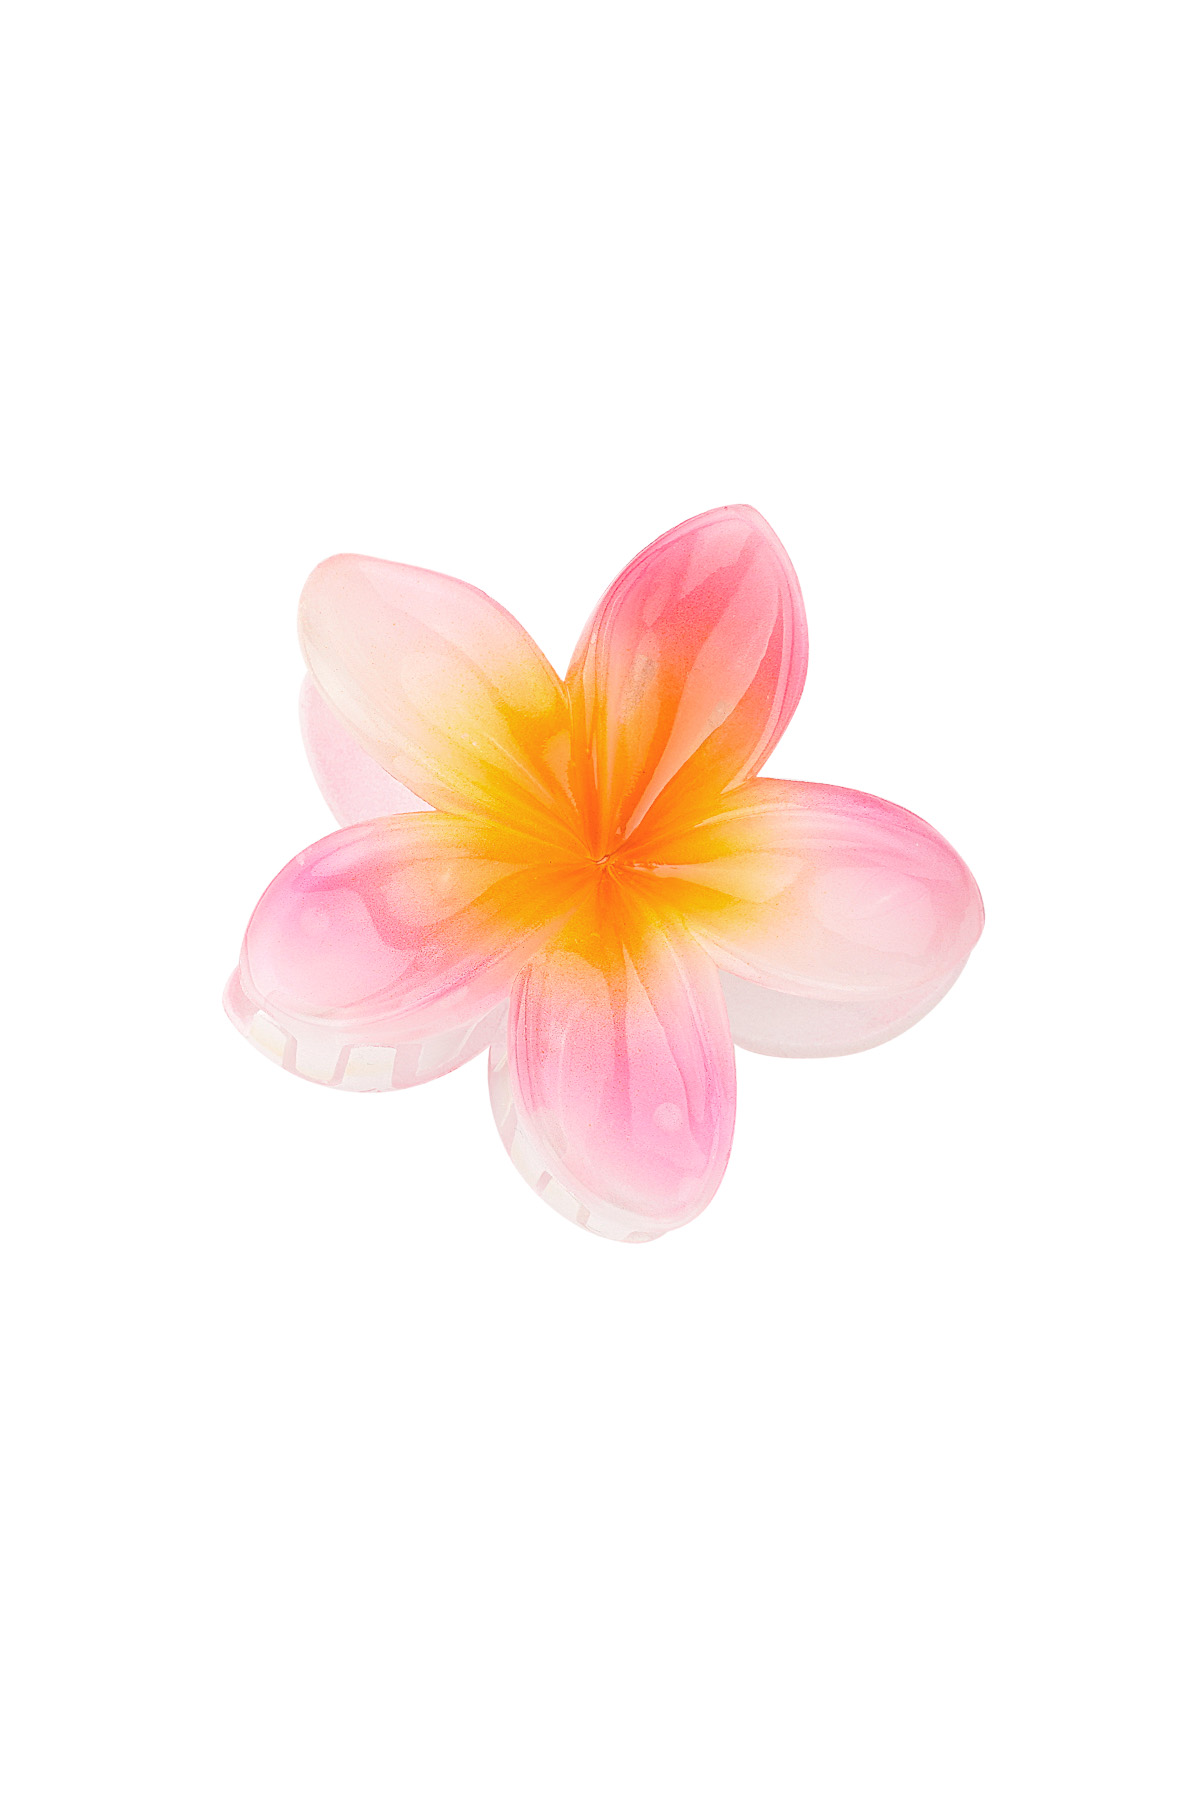 Saç tokası Hawaii çiçeği - pembe h5 